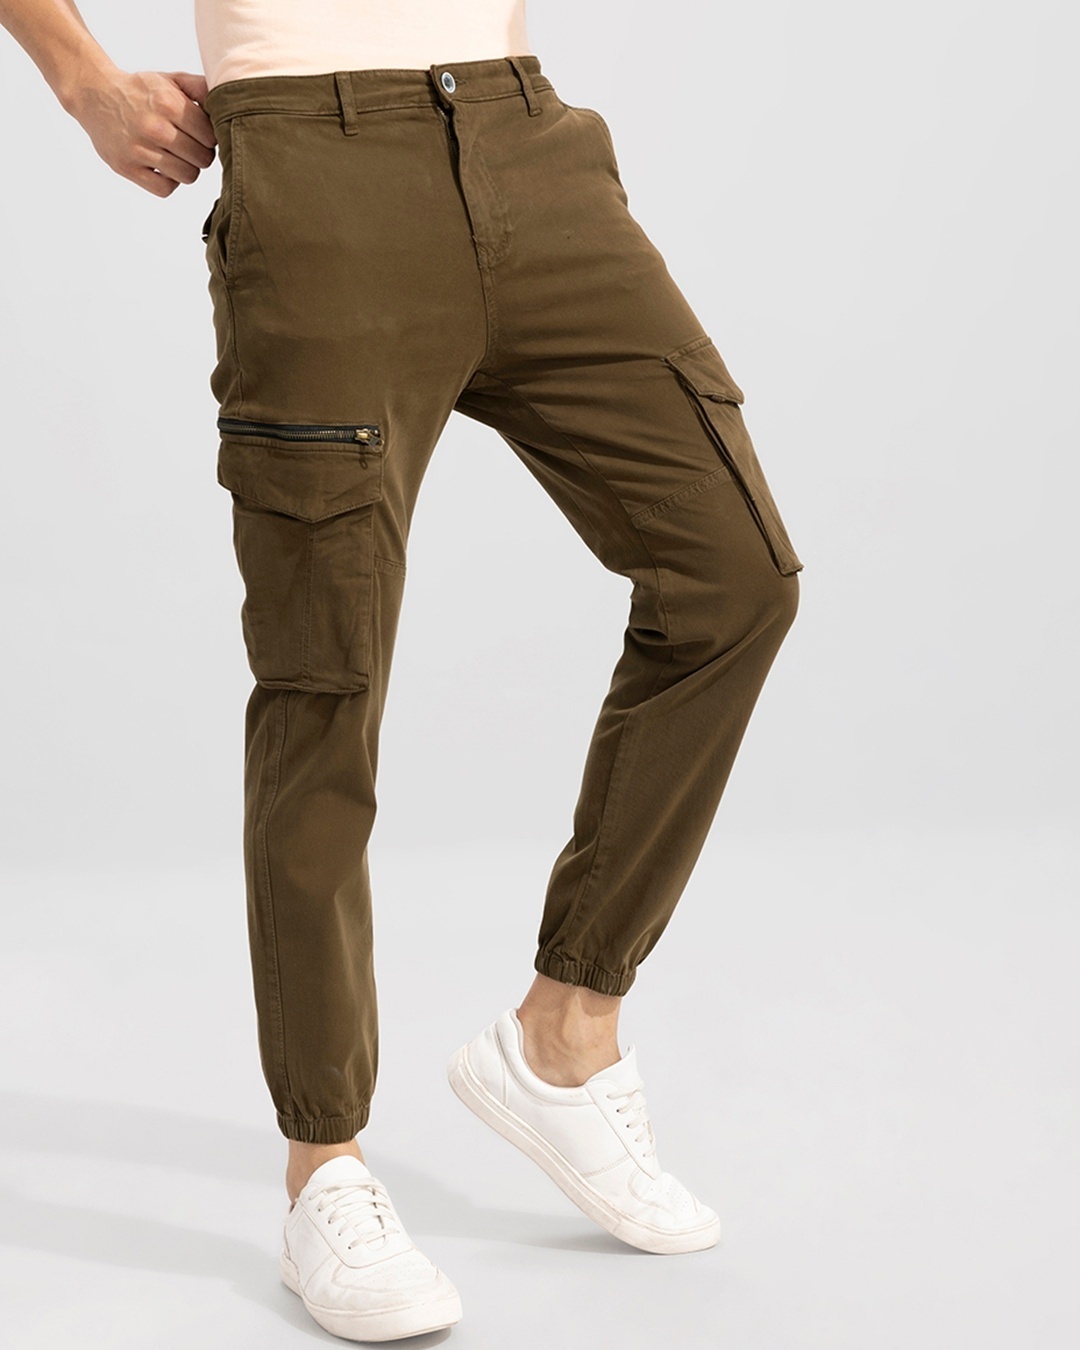 Trousers  Sisley Mens Slim Fit Cargo Trousers Military Green  Mella Risya